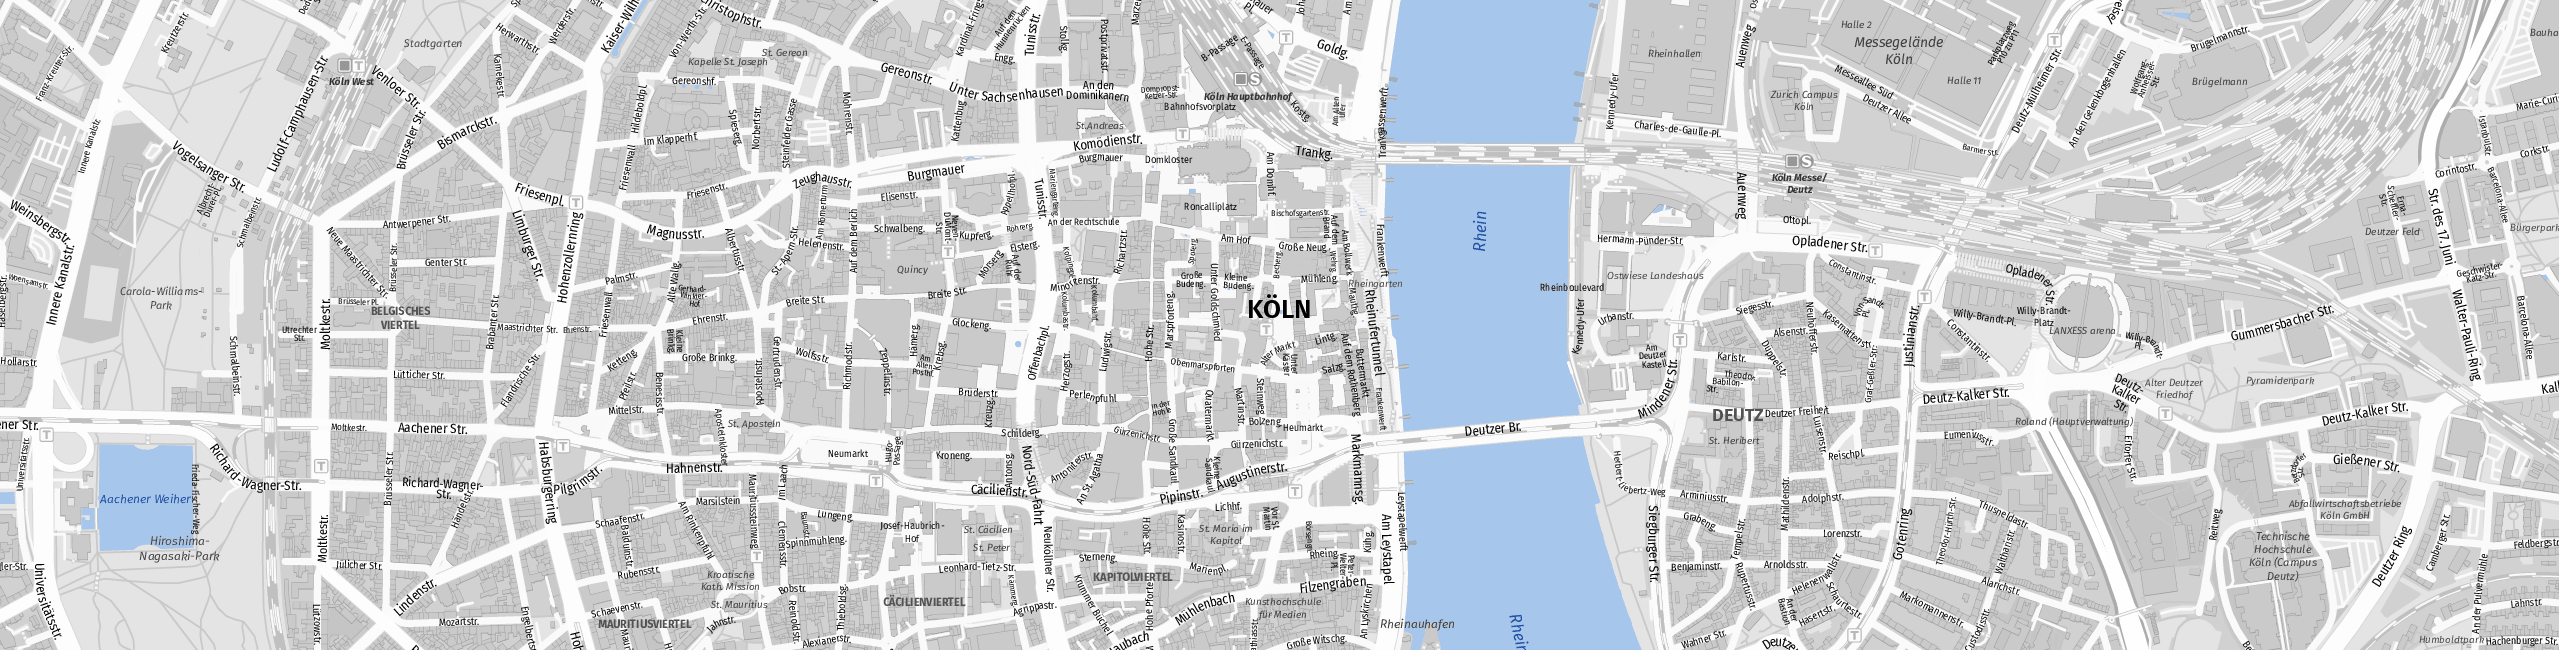 Stadtplan Köln zum Downloaden.